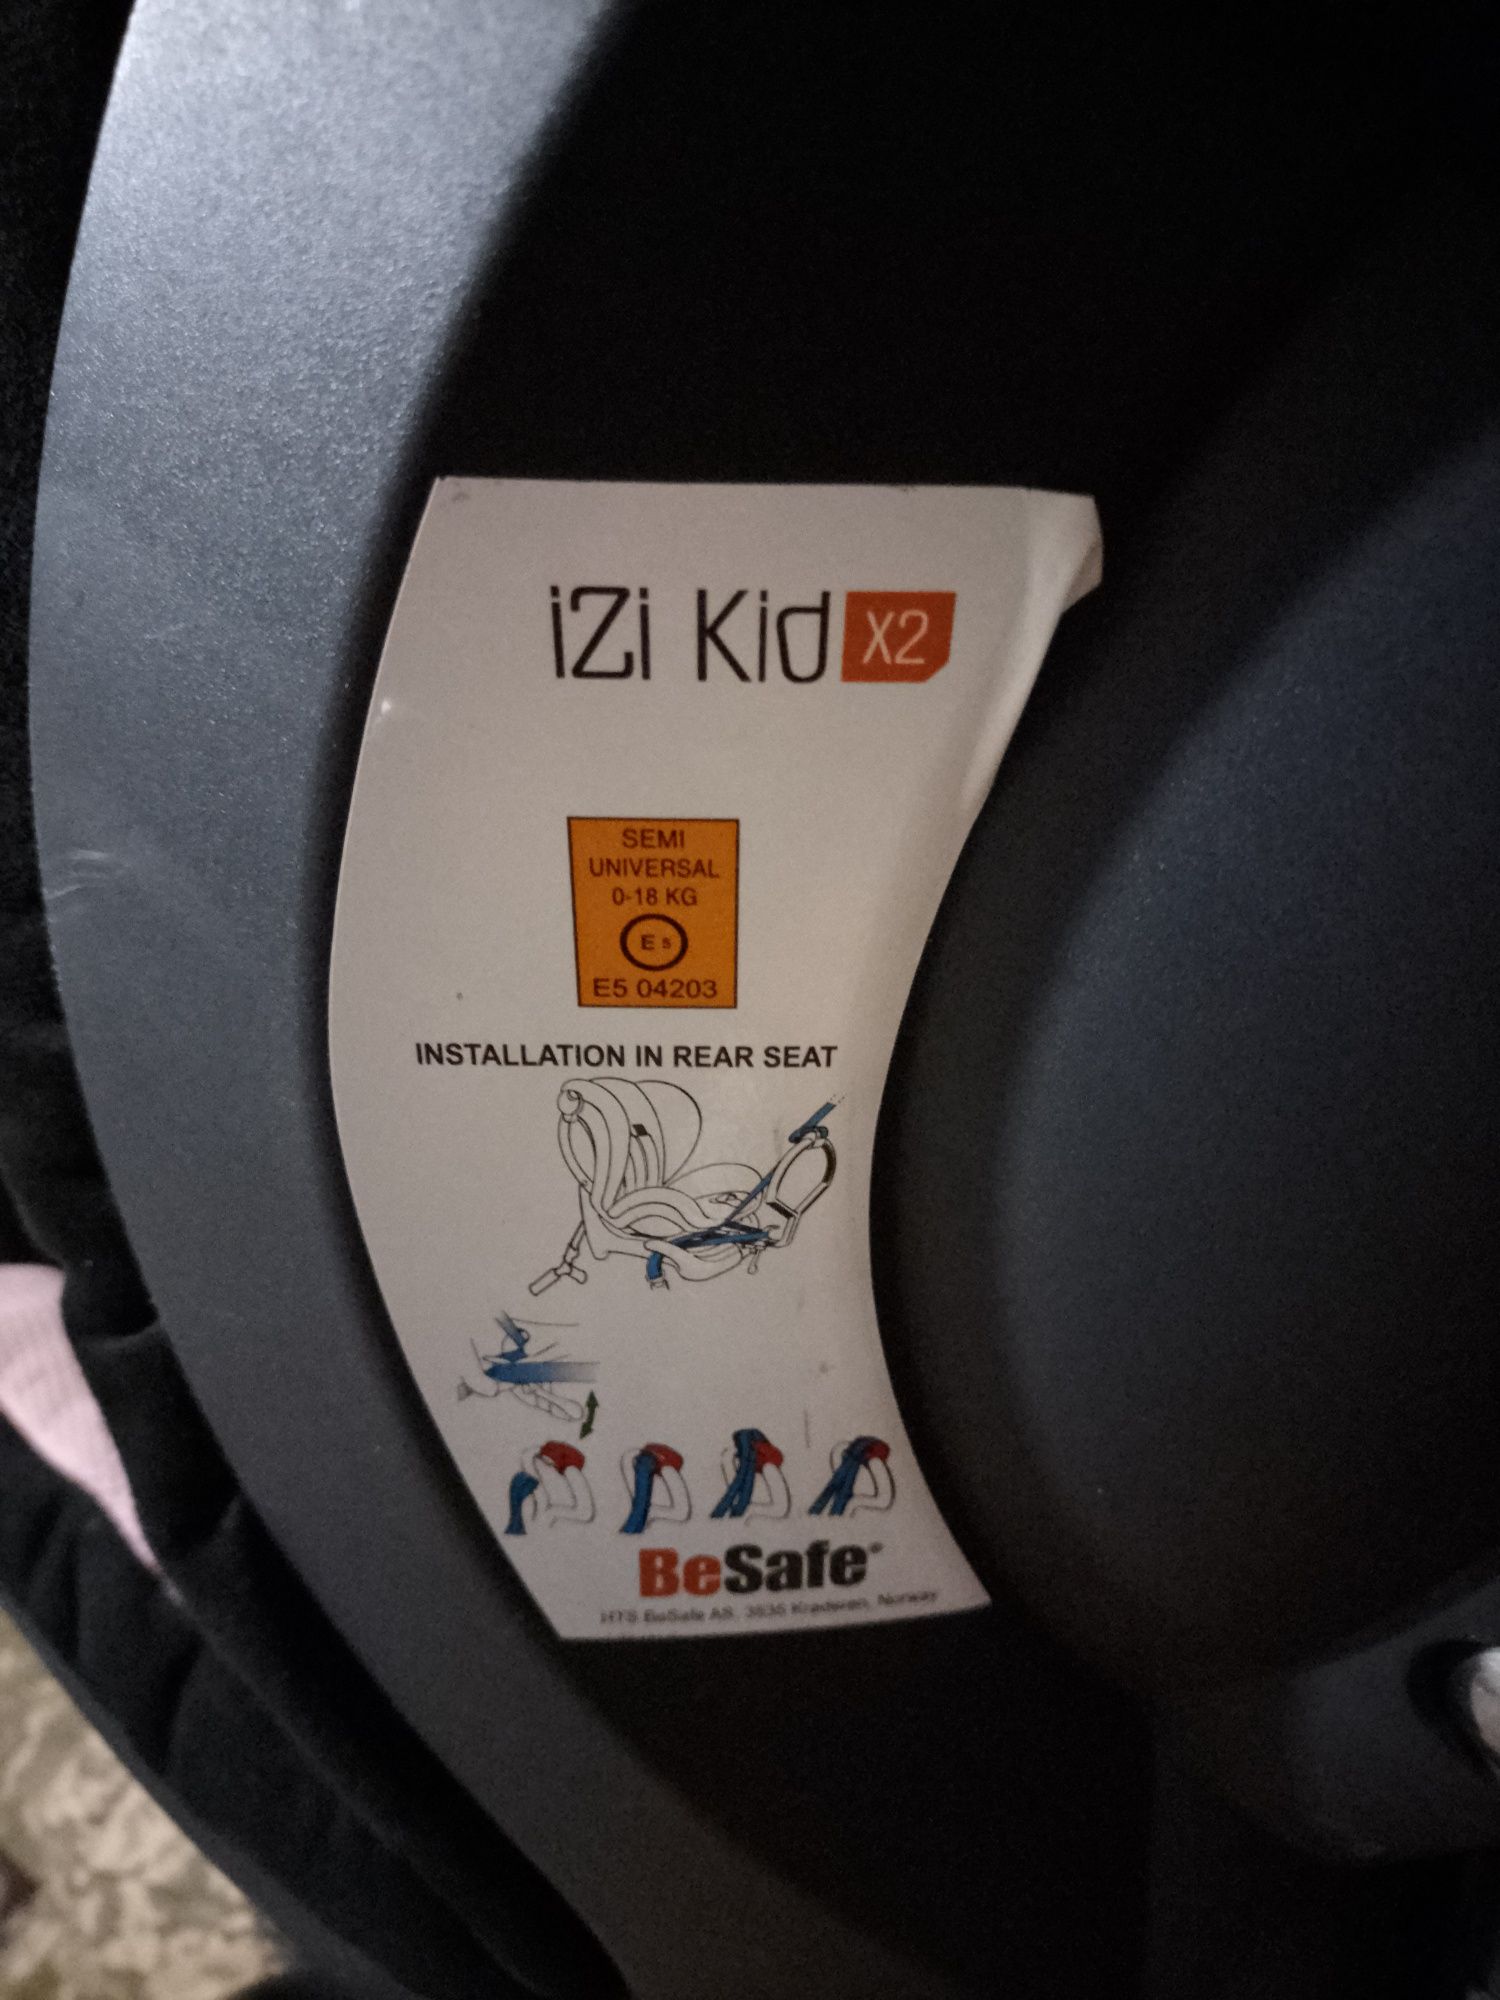 Кресло детское 0-18 кг BeSafe izi kid x2